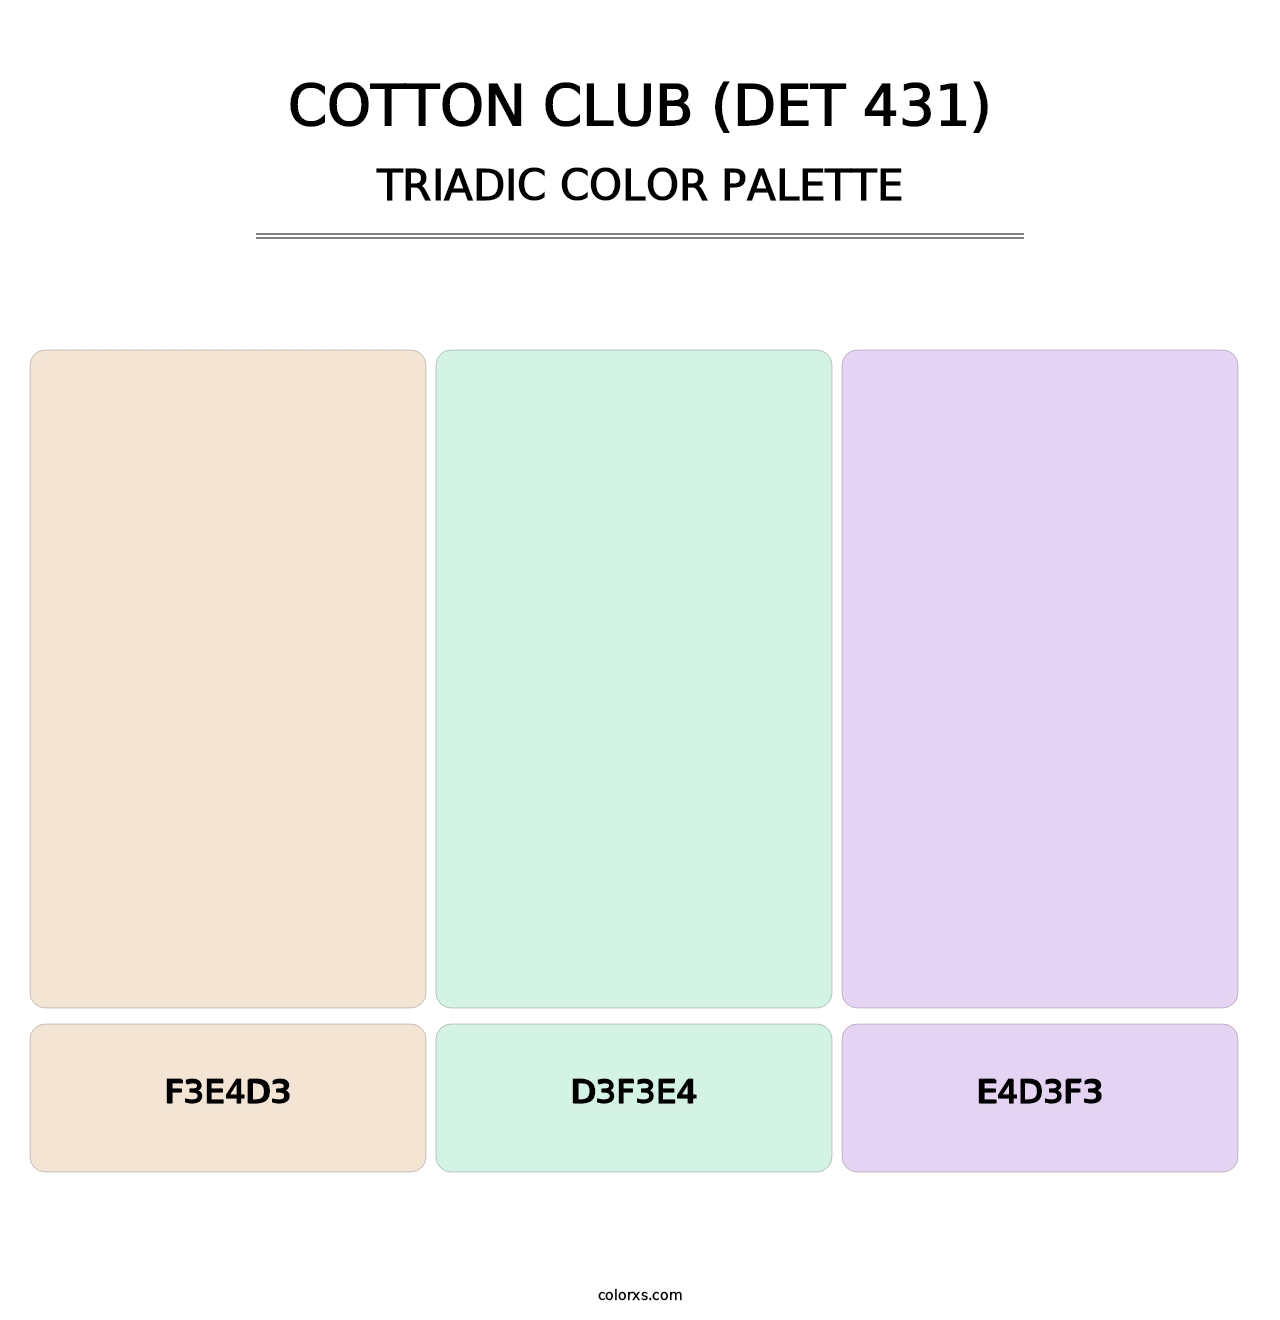 Cotton Club (DET 431) - Triadic Color Palette